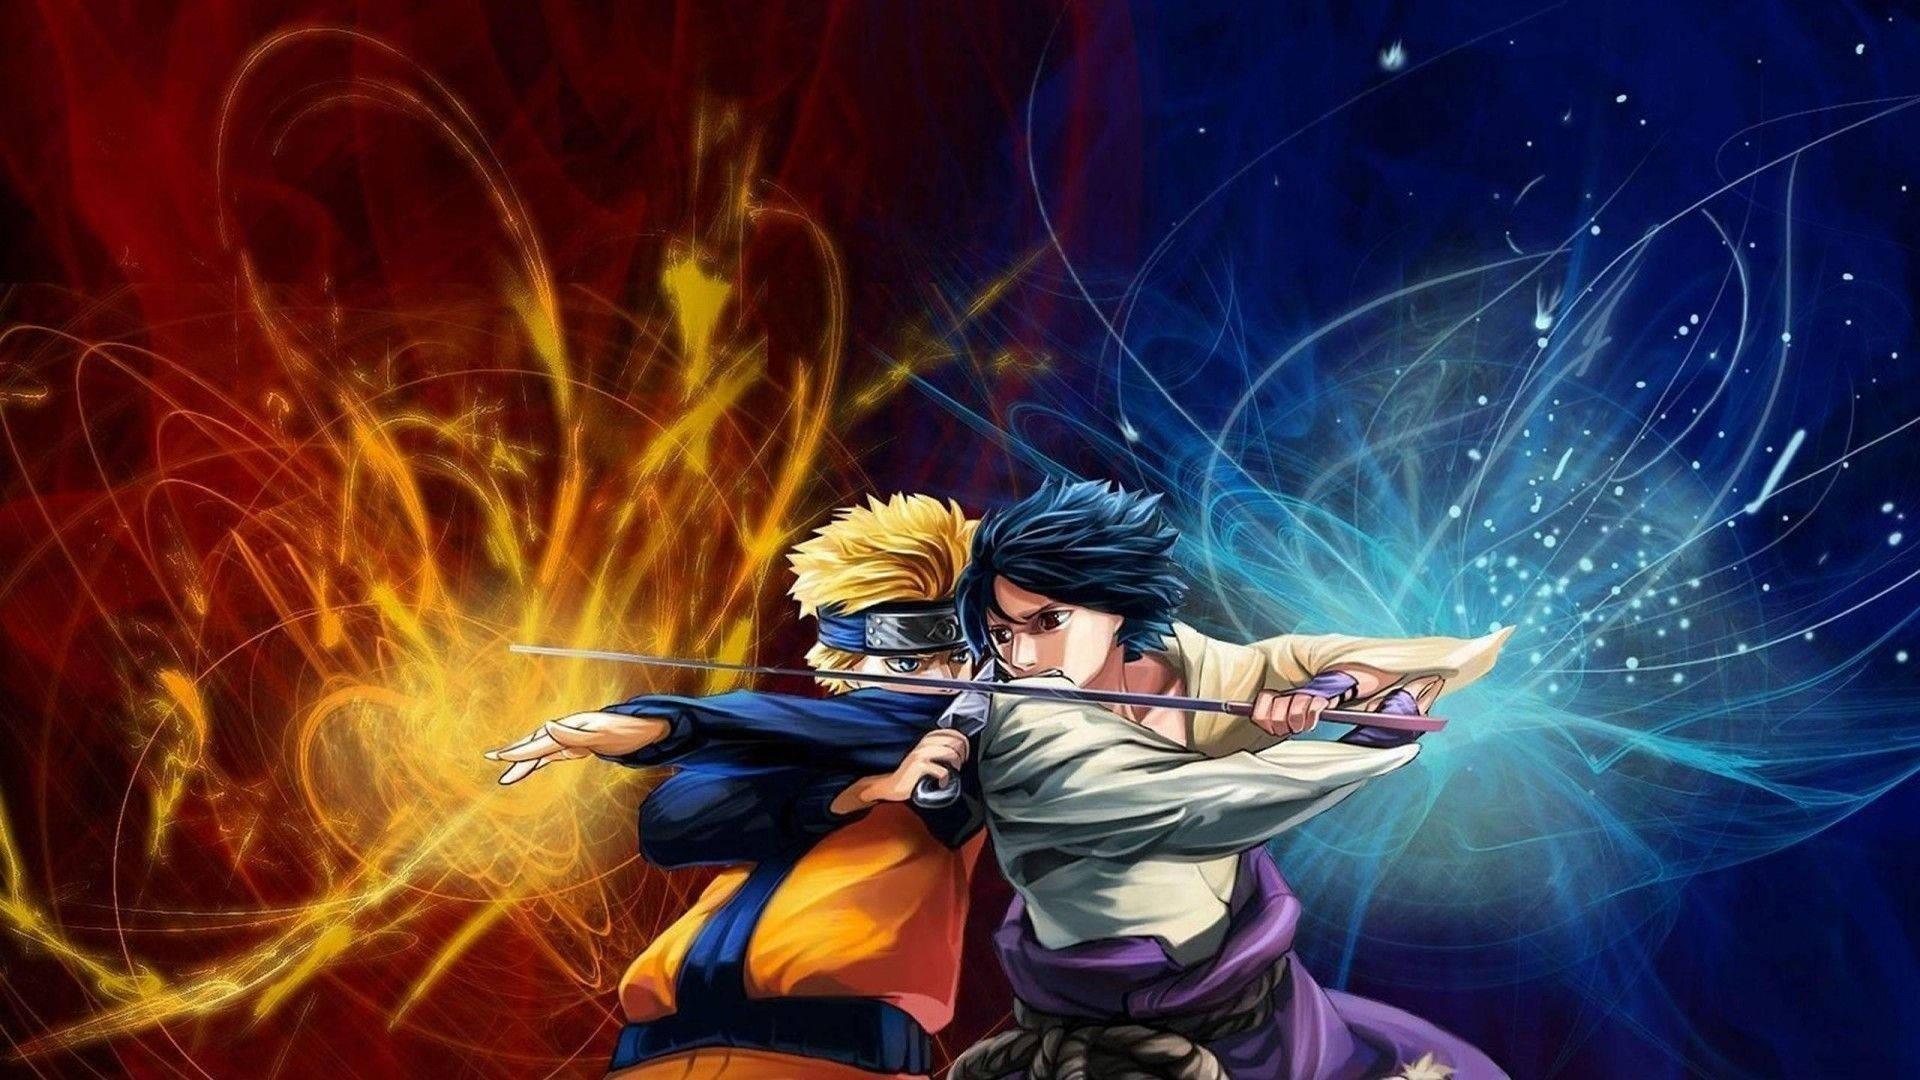 Aesthetic Naruto Versus Sasuke Digital Fanart Wallpaper